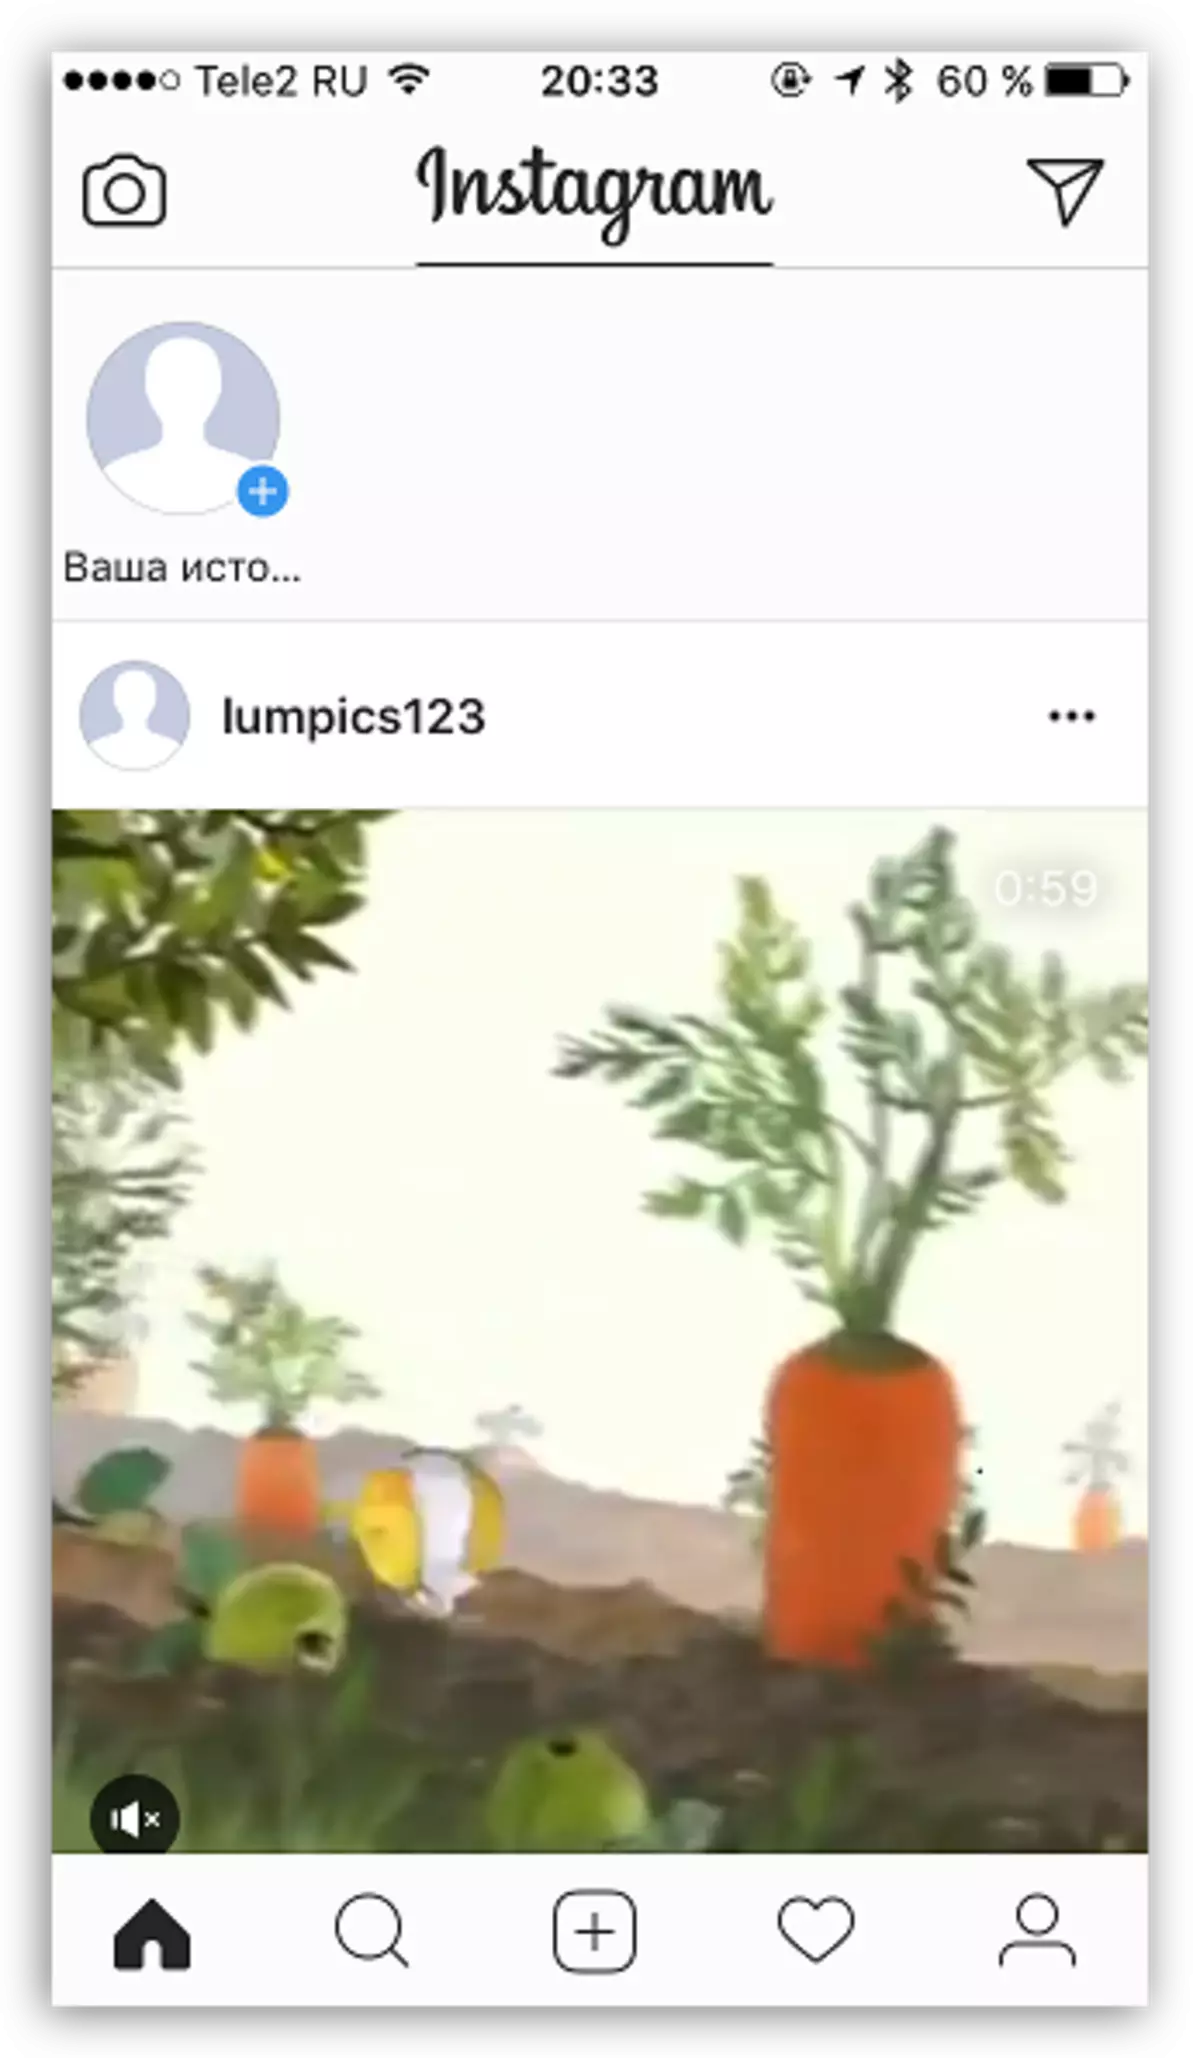 ویدئو منتشر شده در Instagram از کامپیوتر